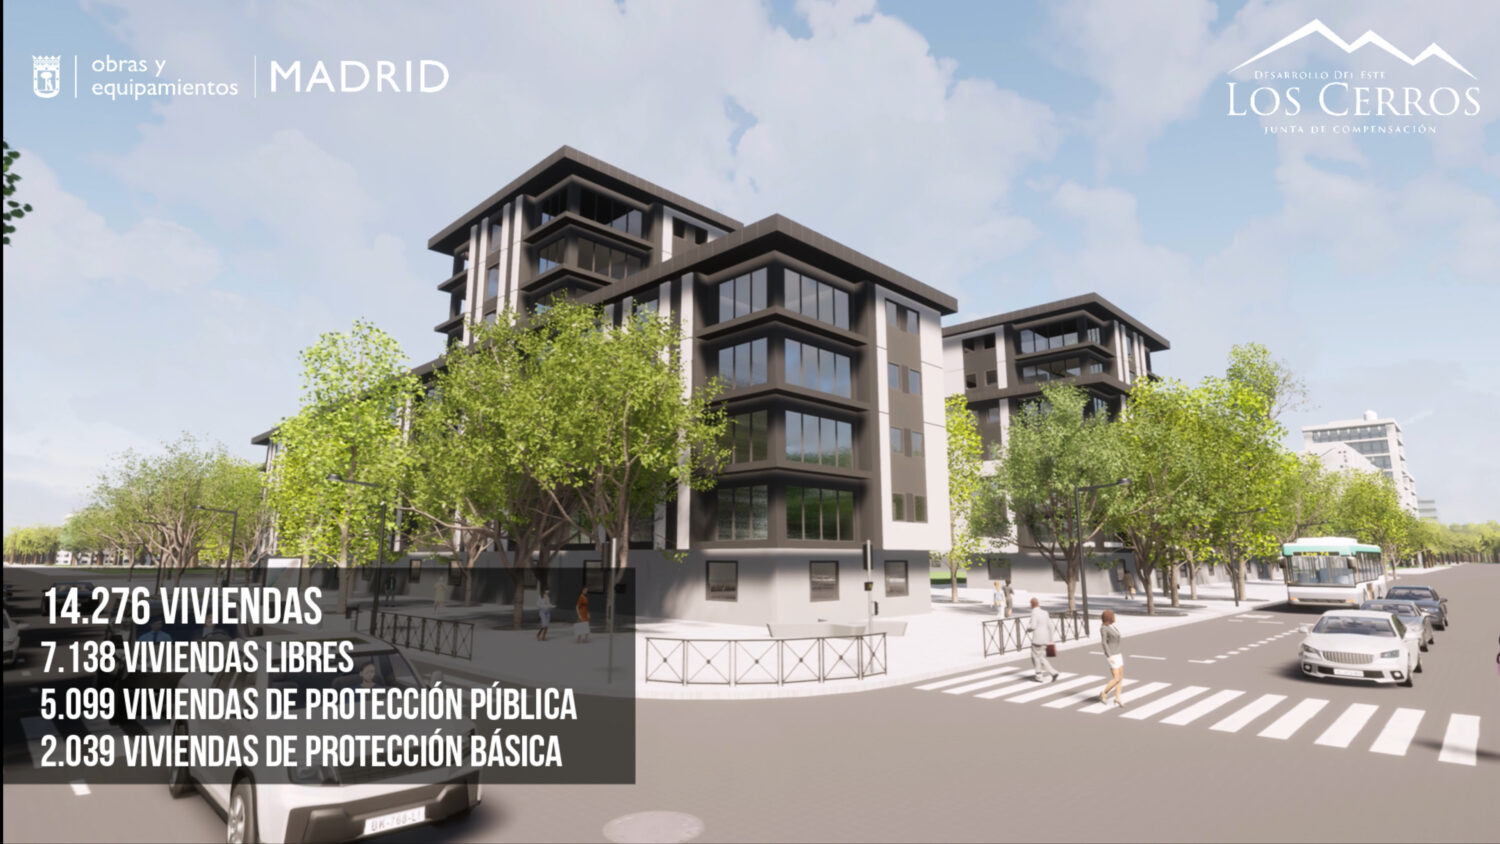 El Ayto. de Madrid aprueba el proyecto de urbanización de «Los Cerros», situado entre El Cañaveral y San Fernando de Henares.